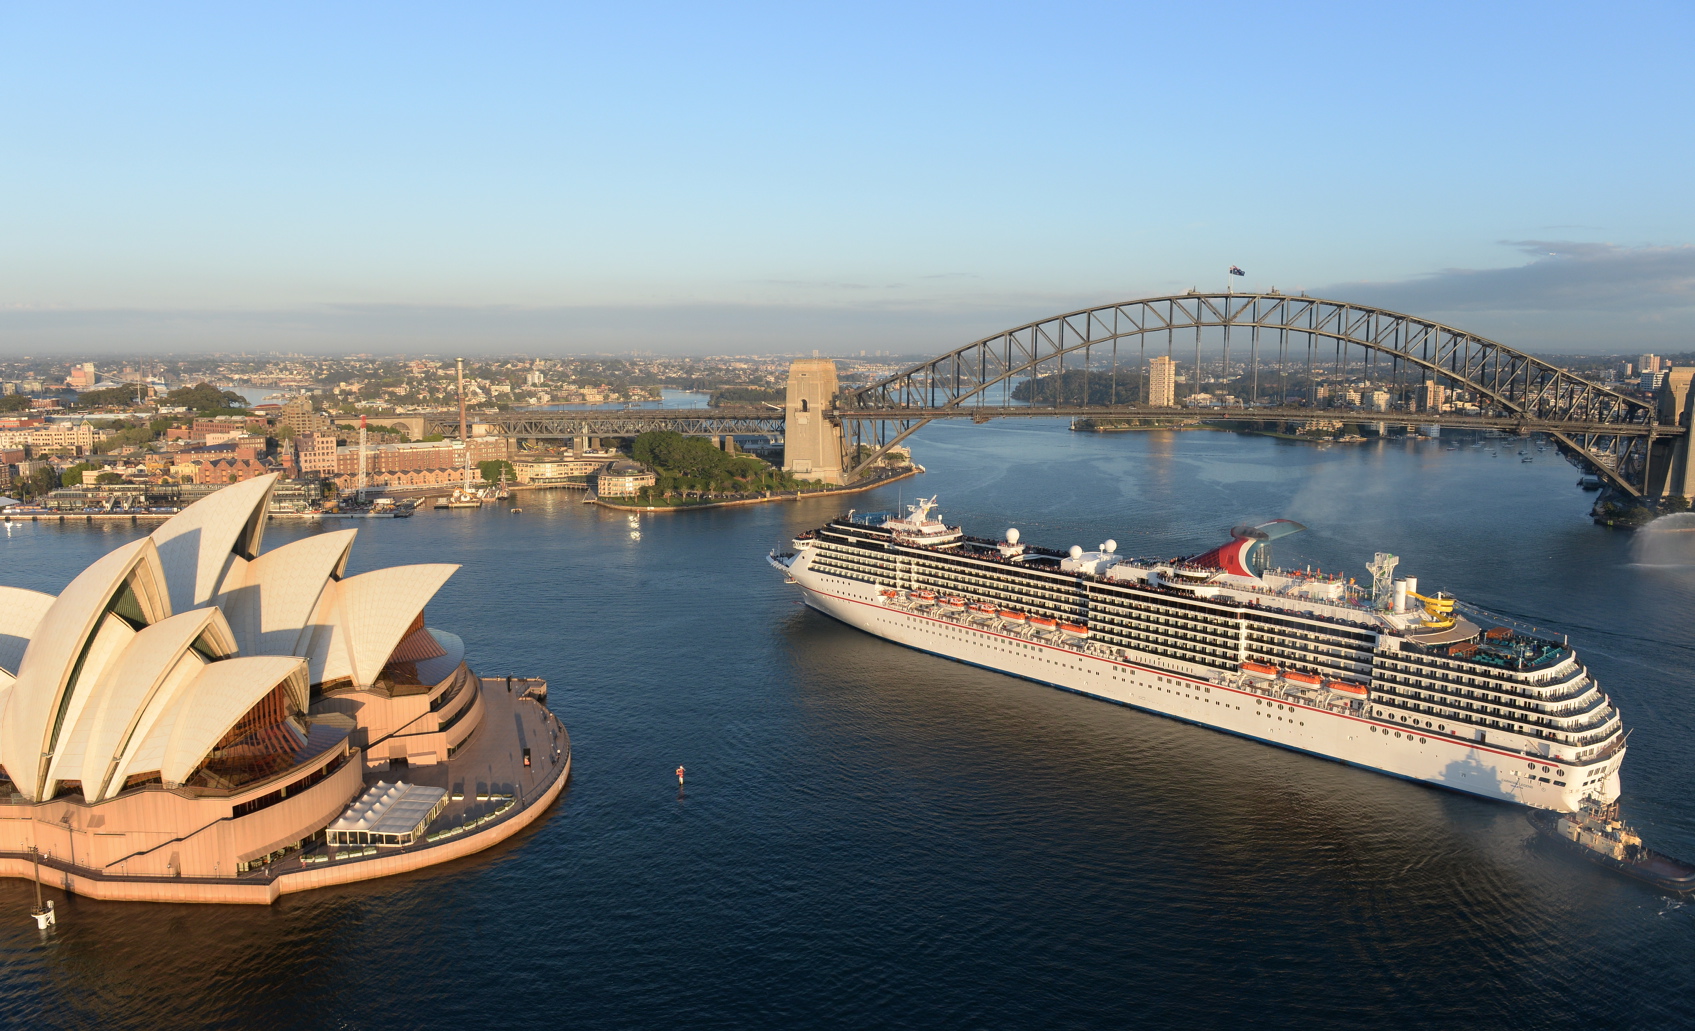 Carnival Legend Arrives in Sydney Harbour Sept 22